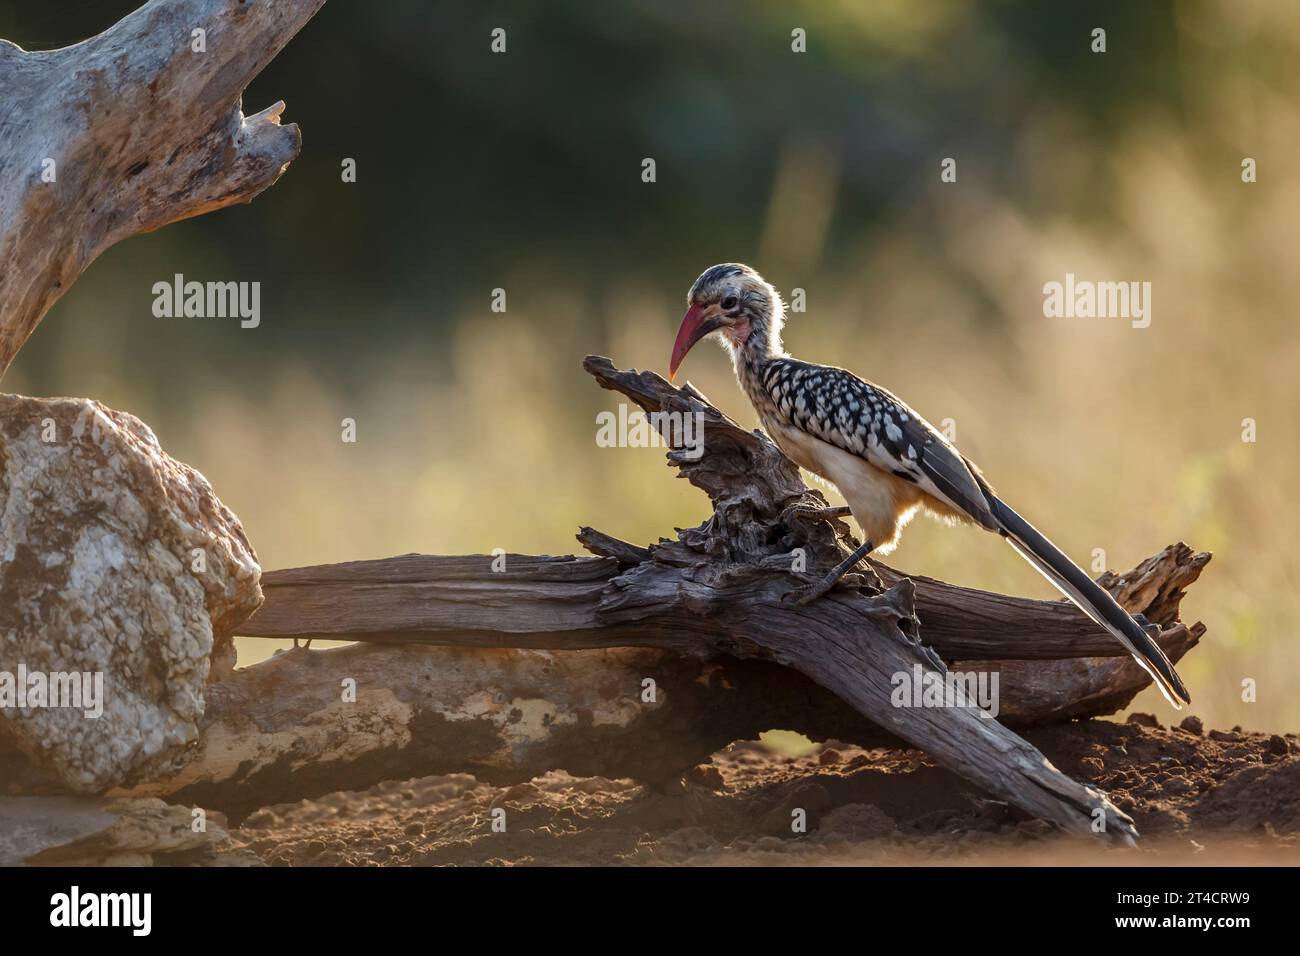 Southern Red a annoncé le Hornbill debout sur une bûche à l'aube dans le parc national Kruger, Afrique du Sud ; espèce Tockus rufirostris famille des Bucerotidae Banque D'Images